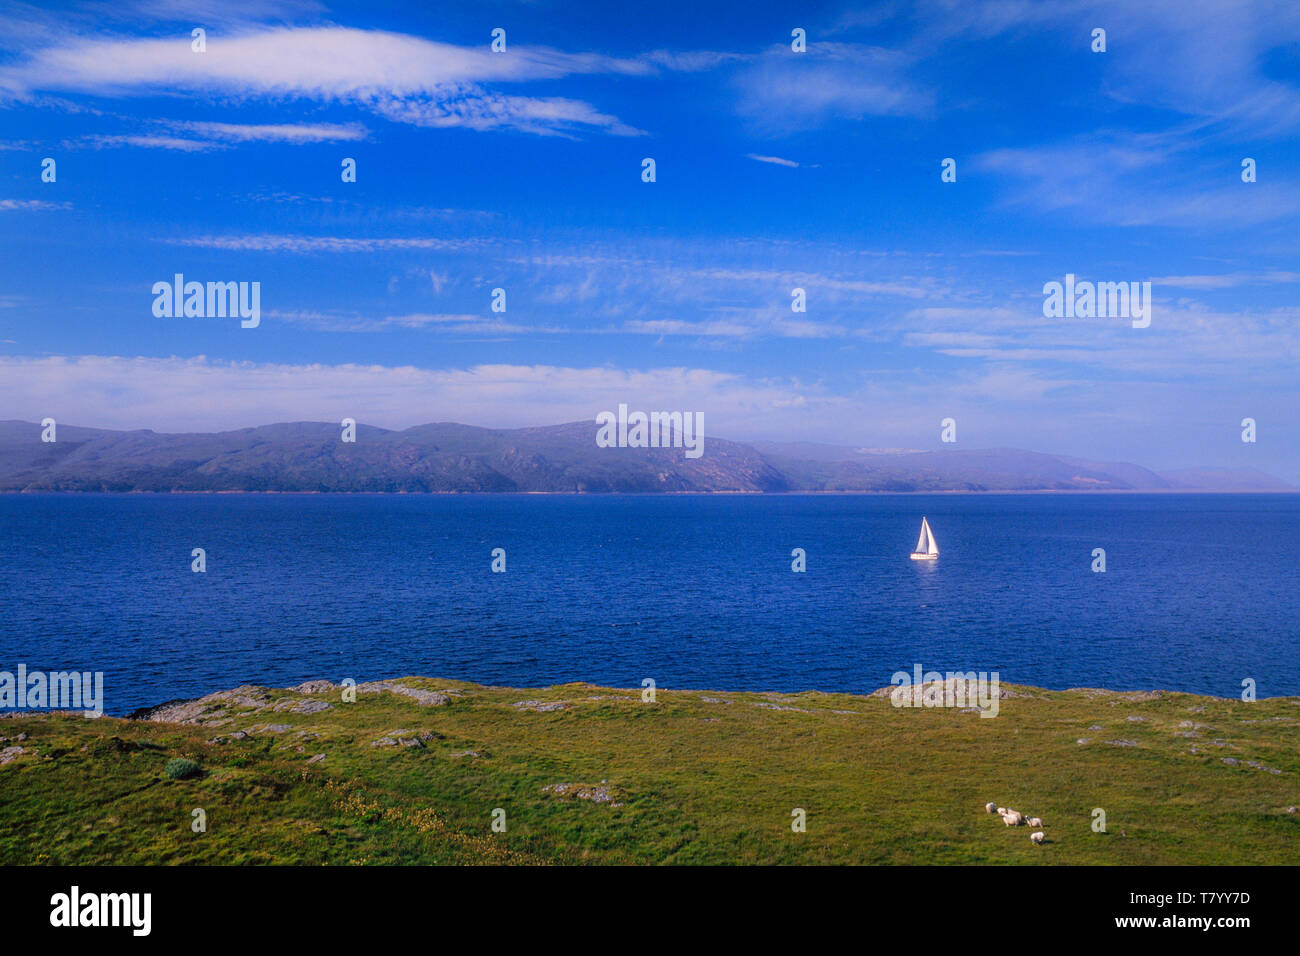 Schottische Landschaft, einer entfernten Insel, einer Yacht auf dem Wasser, Schafe im Vordergrund, helle Sonne. Stockfoto